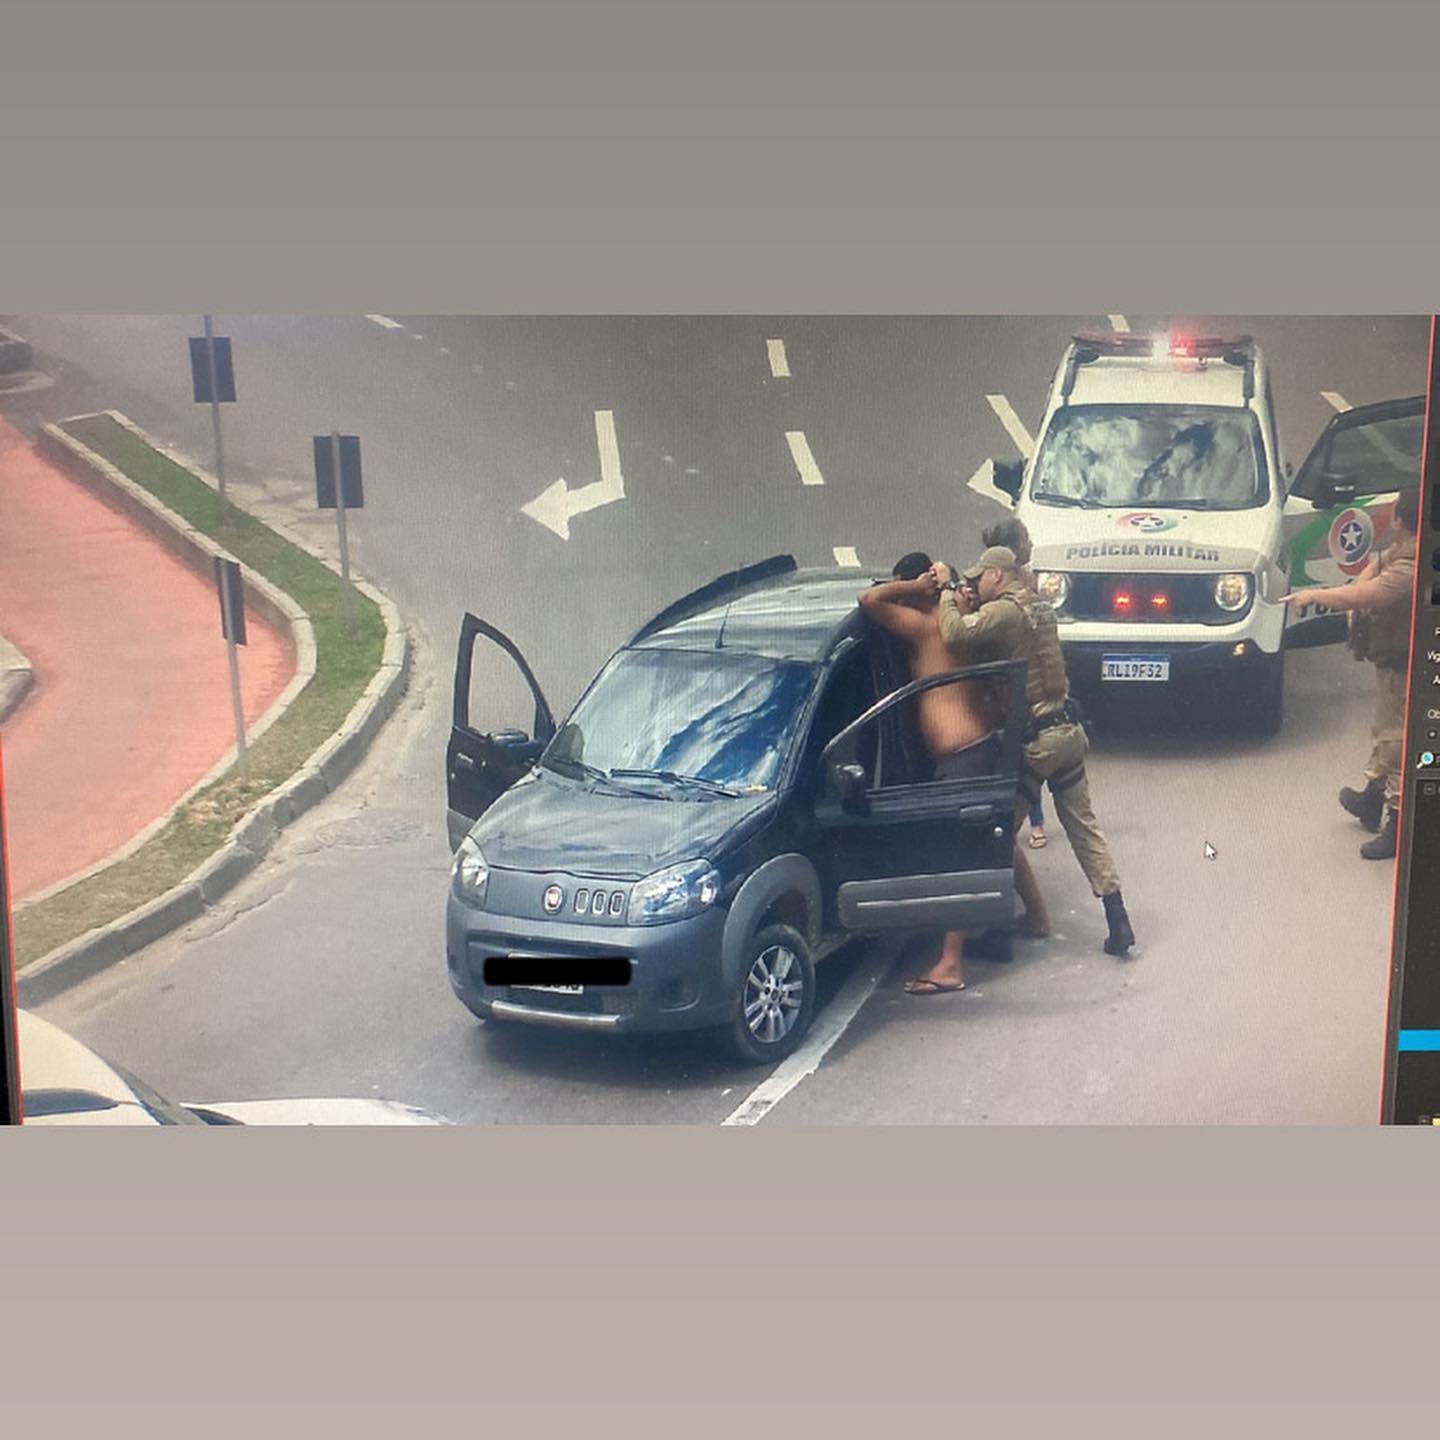 Com auxílio das câmeras PM recupera veículo furtado e cumpre MP em Ibirama